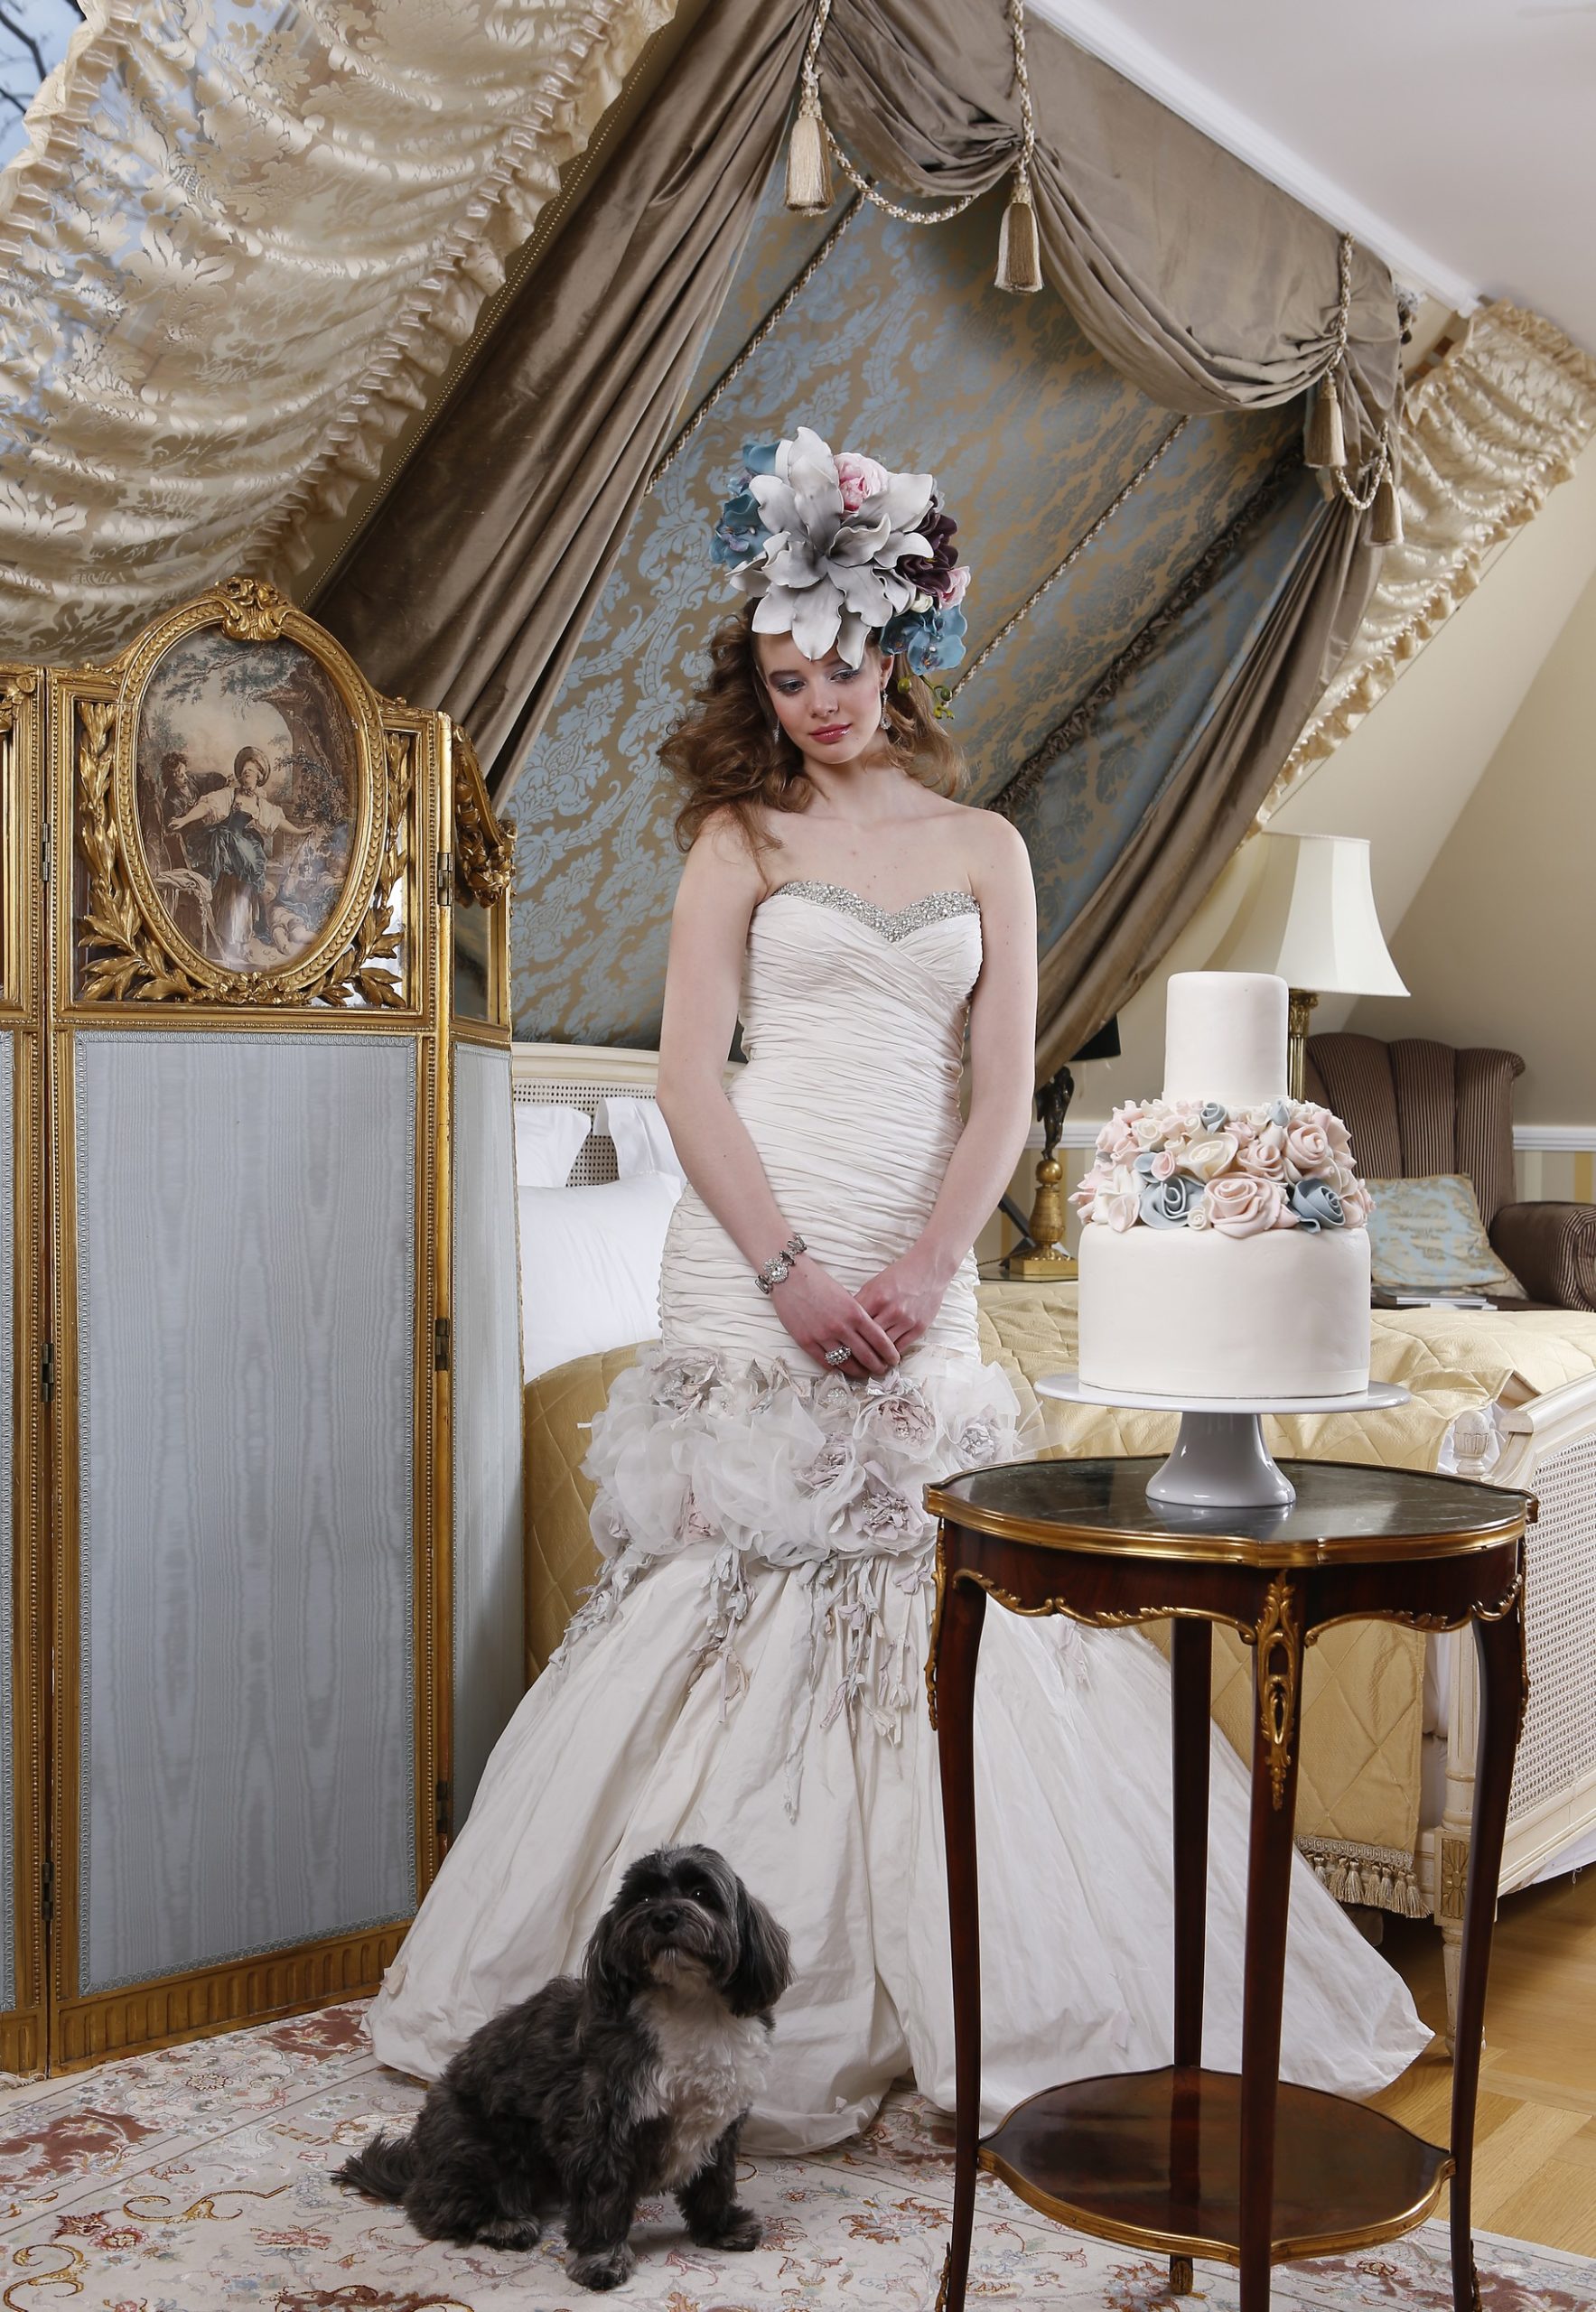 Esküvő Trend magazin által szervezett menyasszonyi ruha fotózáson az Ybl villában Bibi, az Eklektika szalon kiskutyája2